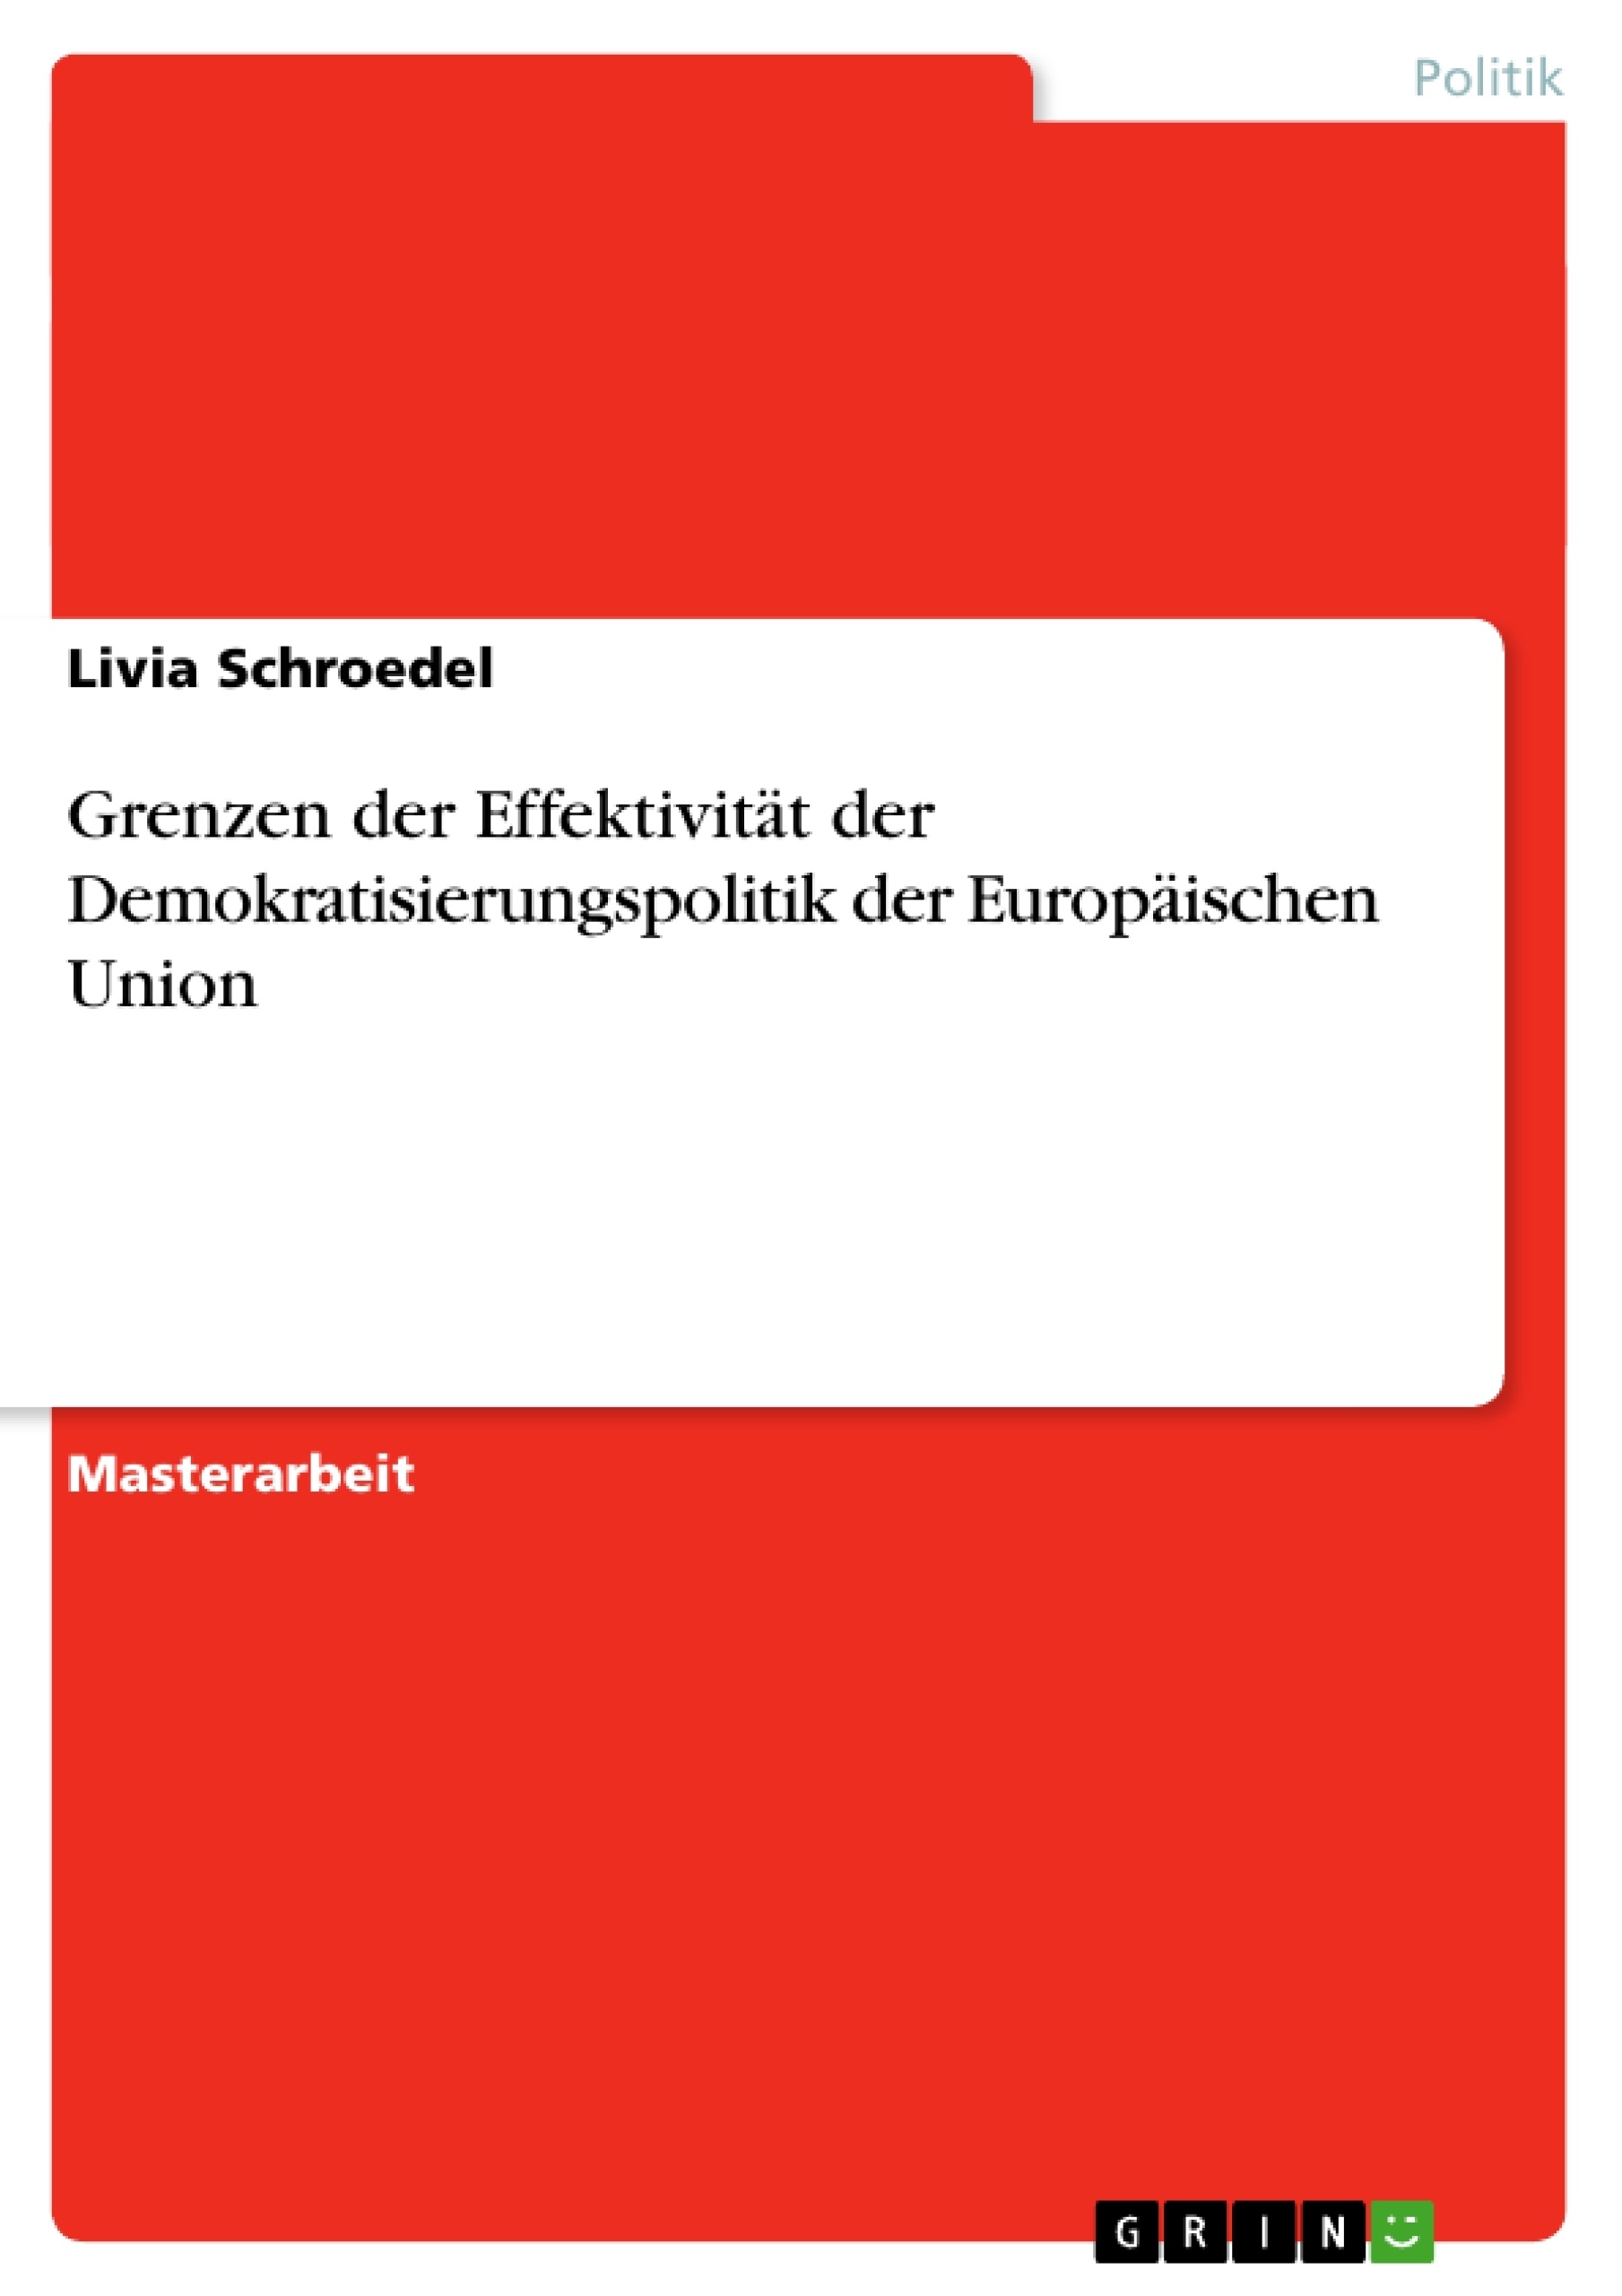 Titre: Grenzen der Effektivität der Demokratisierungspolitik der Europäischen Union